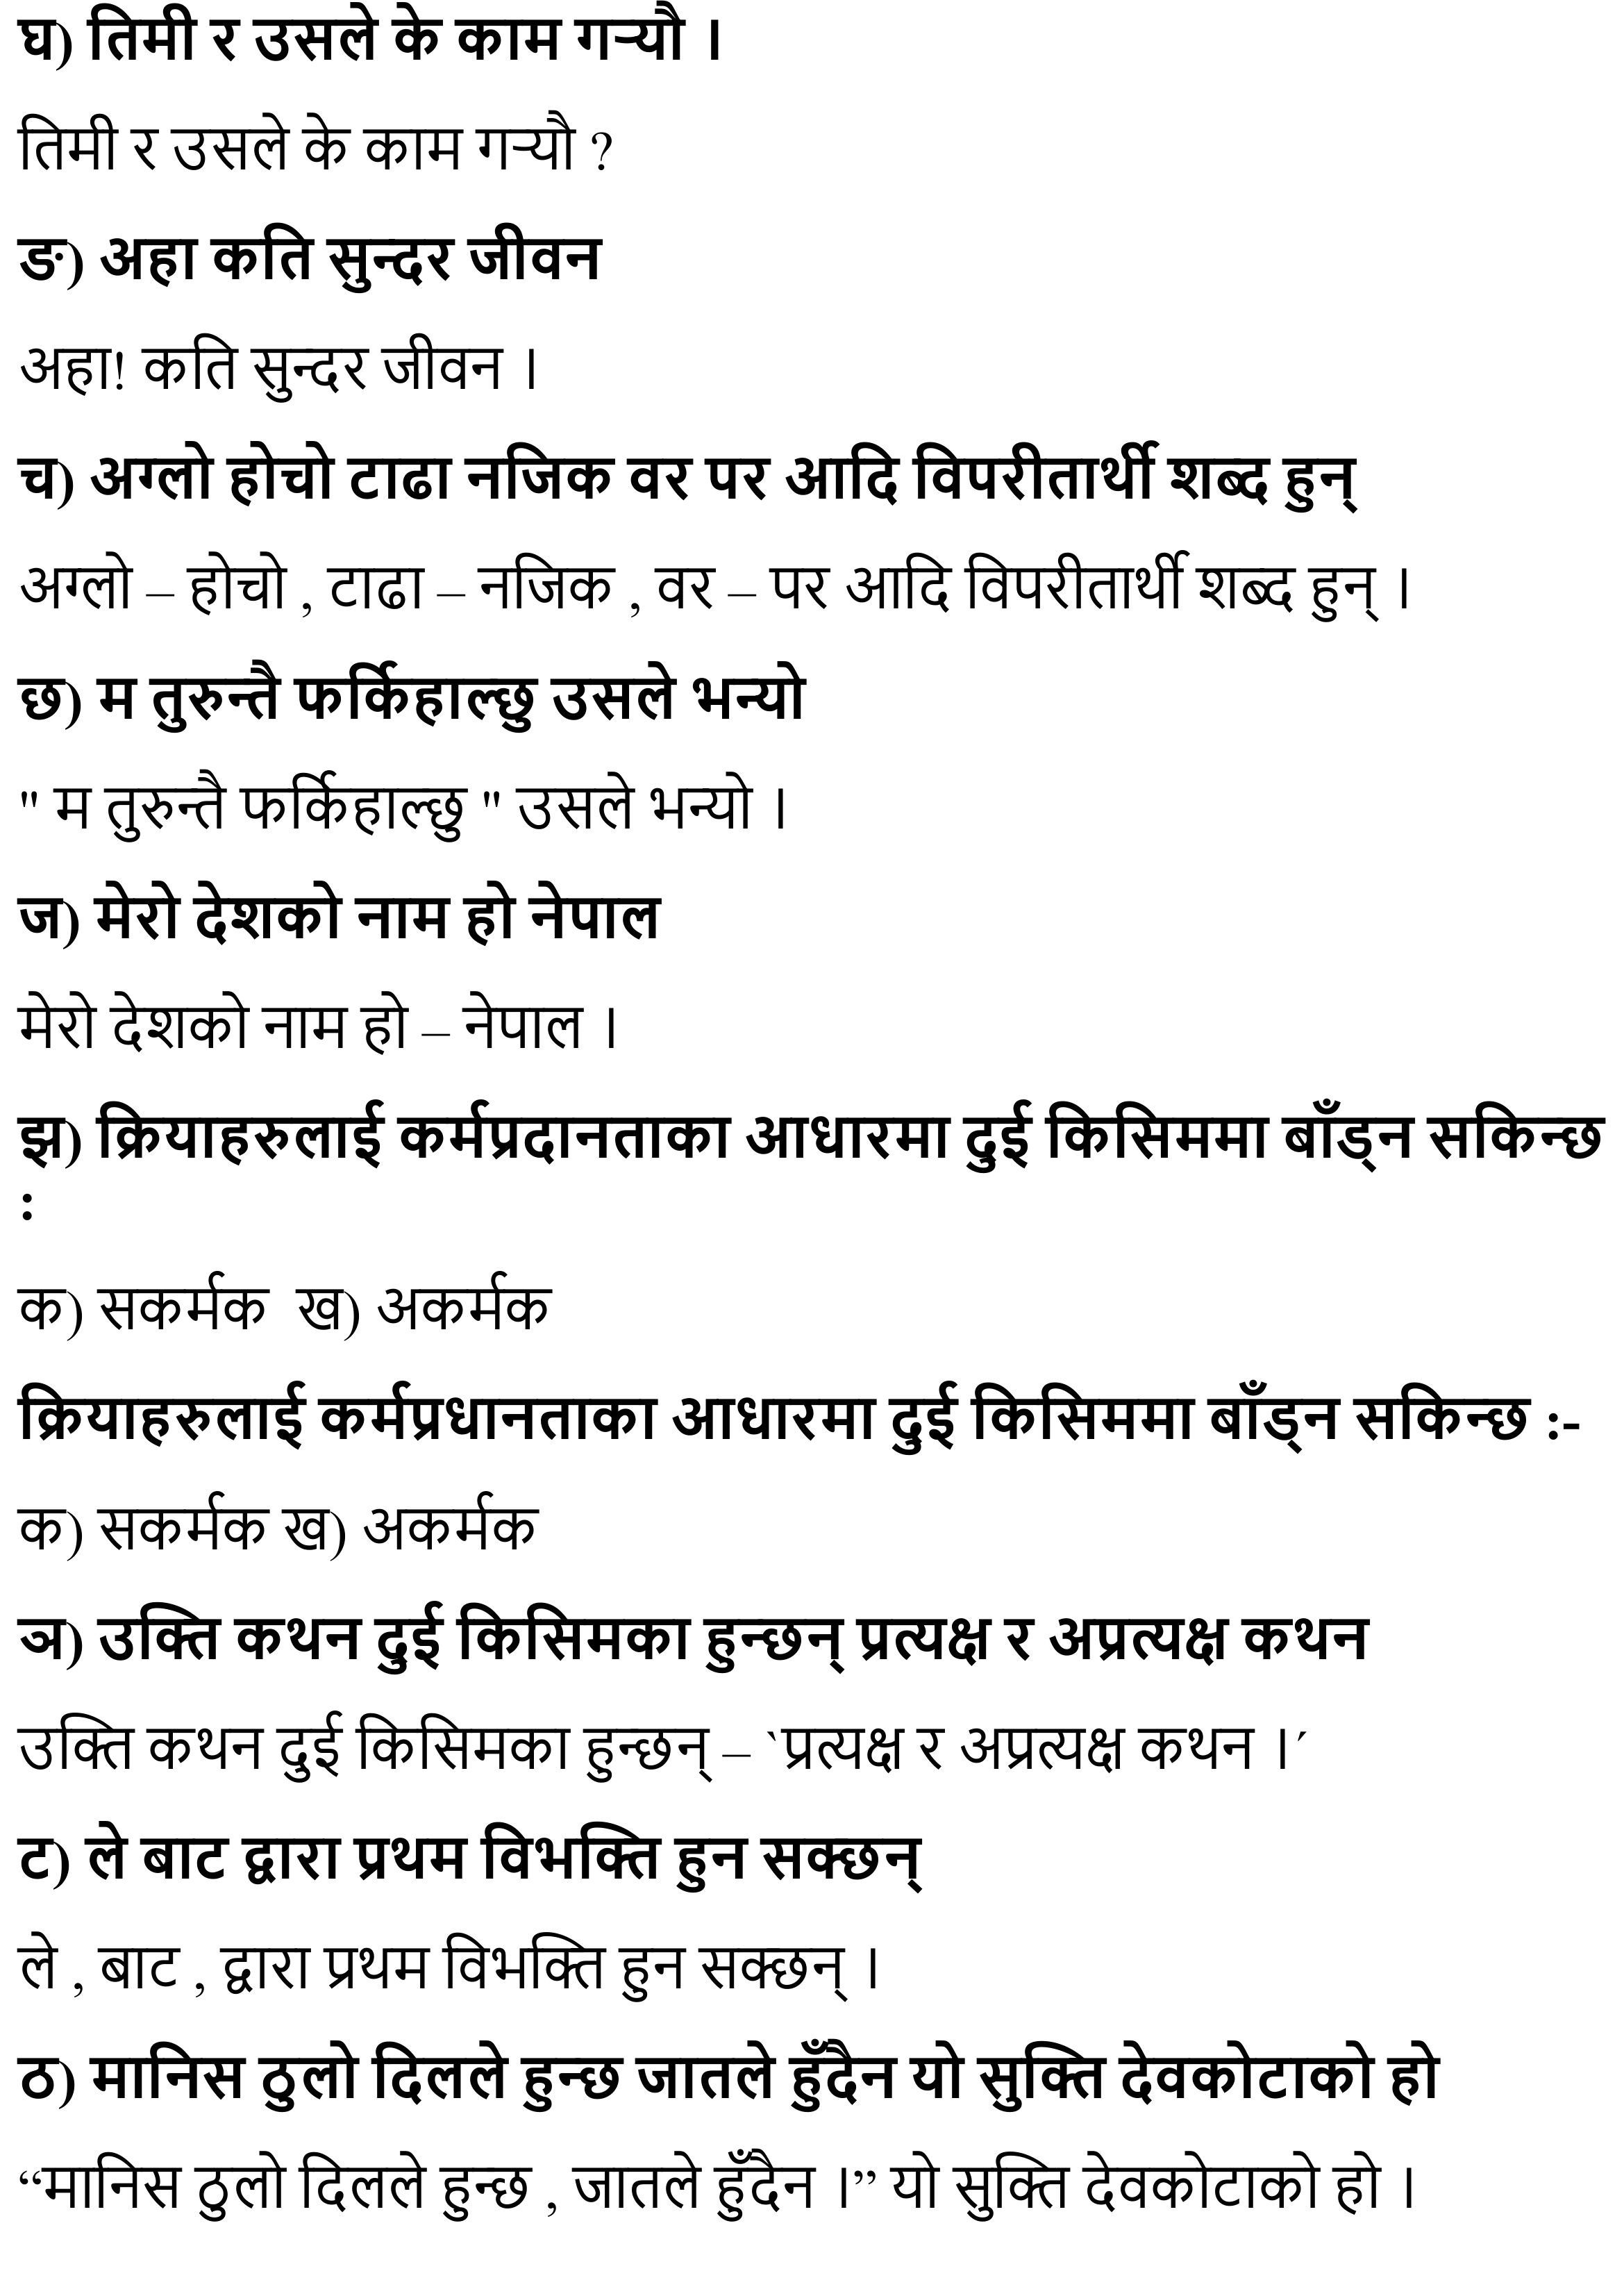 Sathi lai Chithi Exercise: Chapter 5 Class 11 Nepali